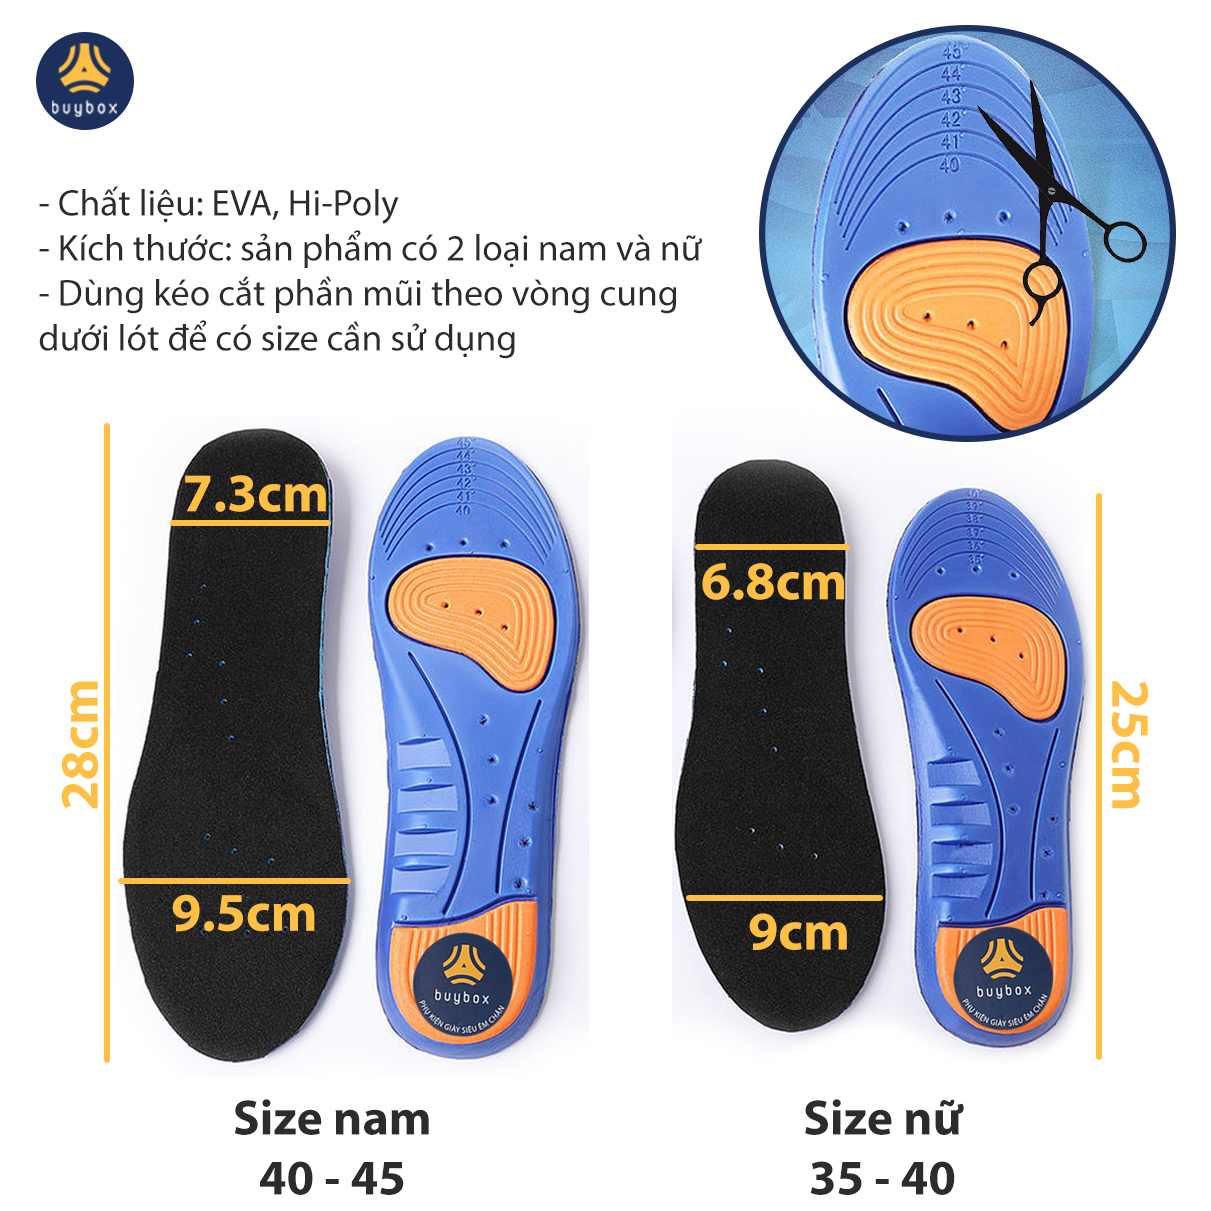 Bộ 3 mẫu lót giày thể thao, đêm êm bàn chân khi vận động, dùng để thay thế lót cũ - Buybox - BBPK26_BBPK128_BBPK155